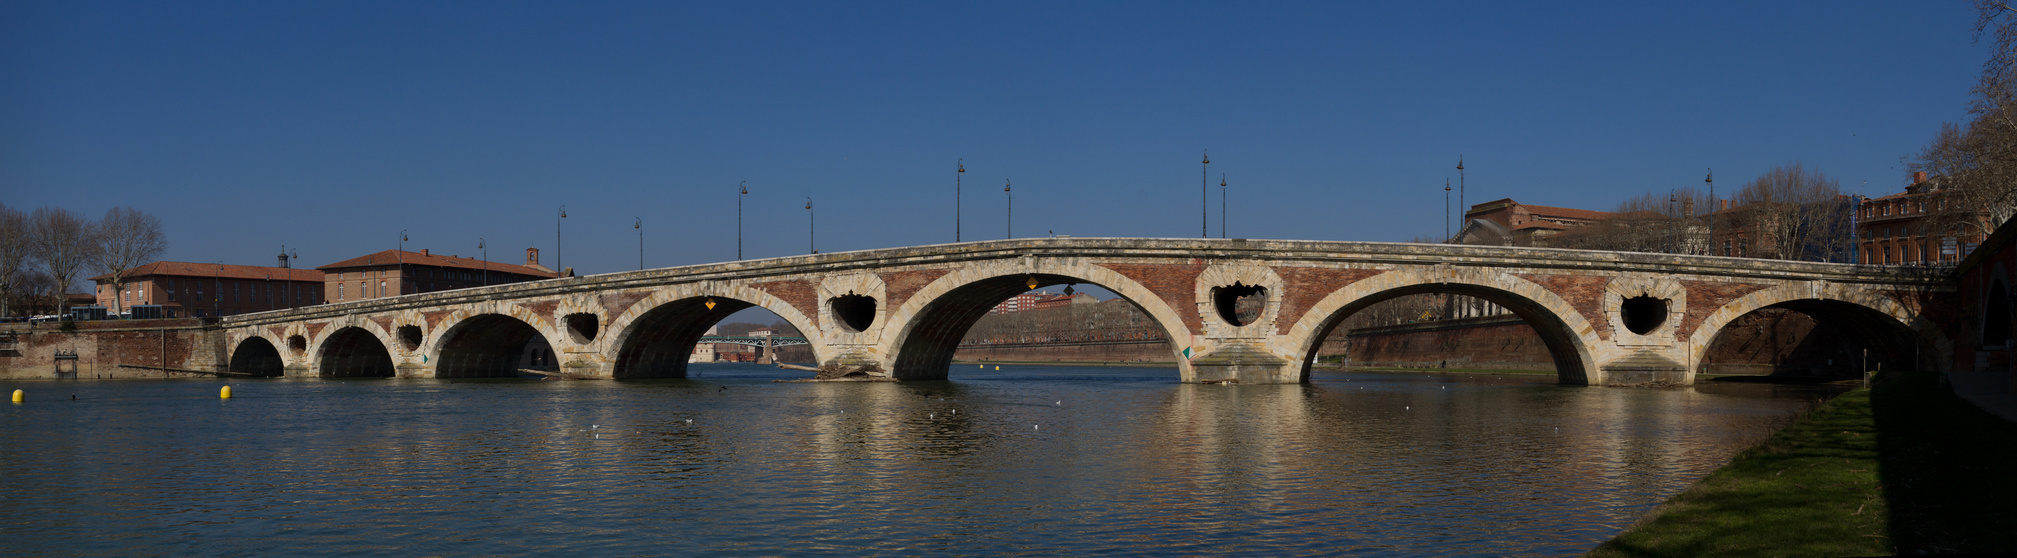 Toulouse - pont-neuf